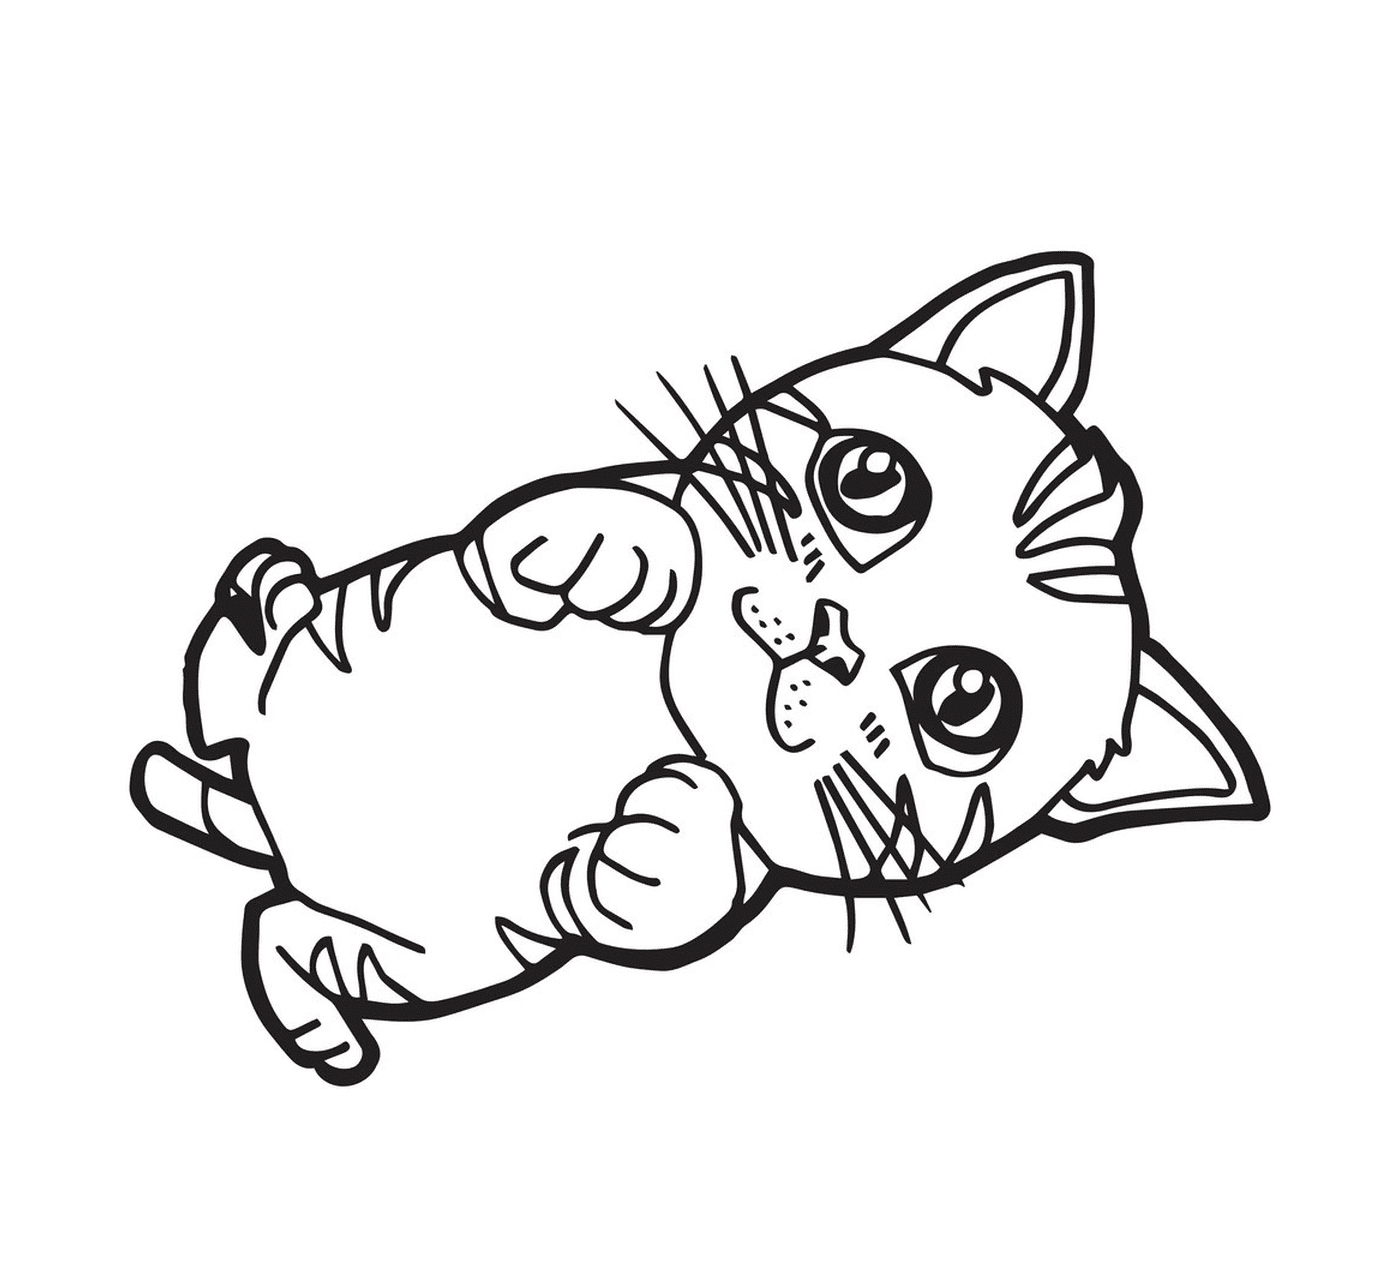  Um gatinho de desenho animado com olhos bonitos 